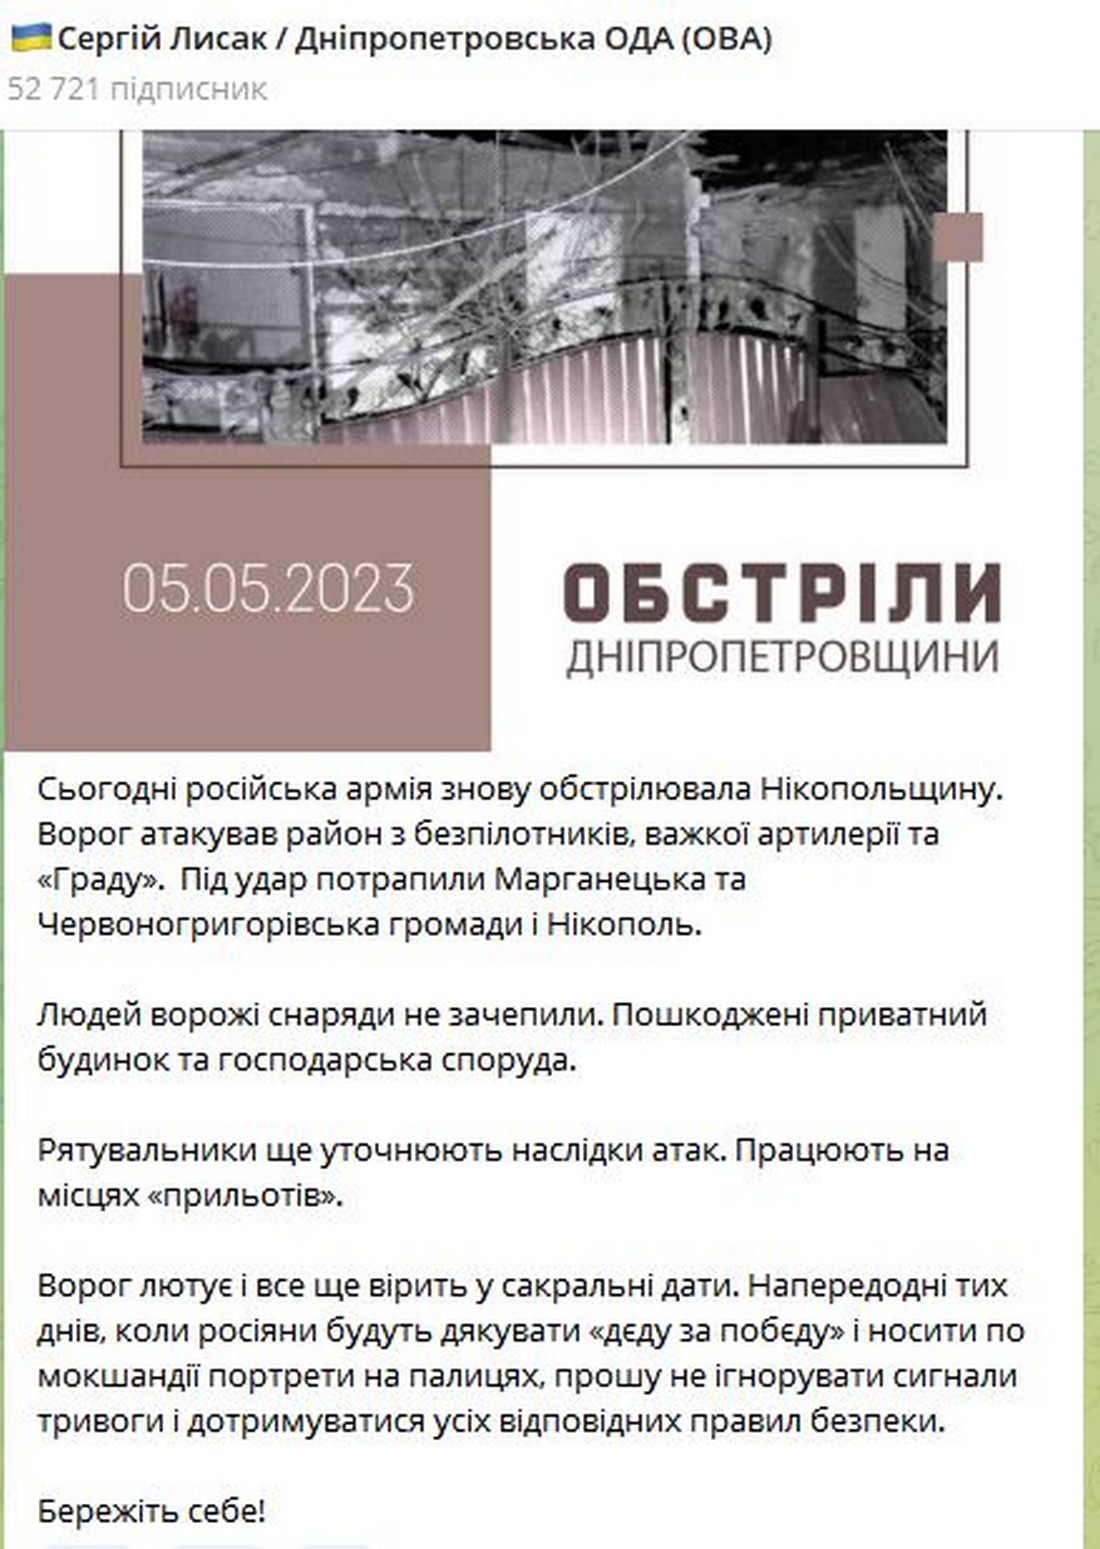 Вдень 5 травня росіяни тричі вдарили по Нікопольщині - Микола Лукашук